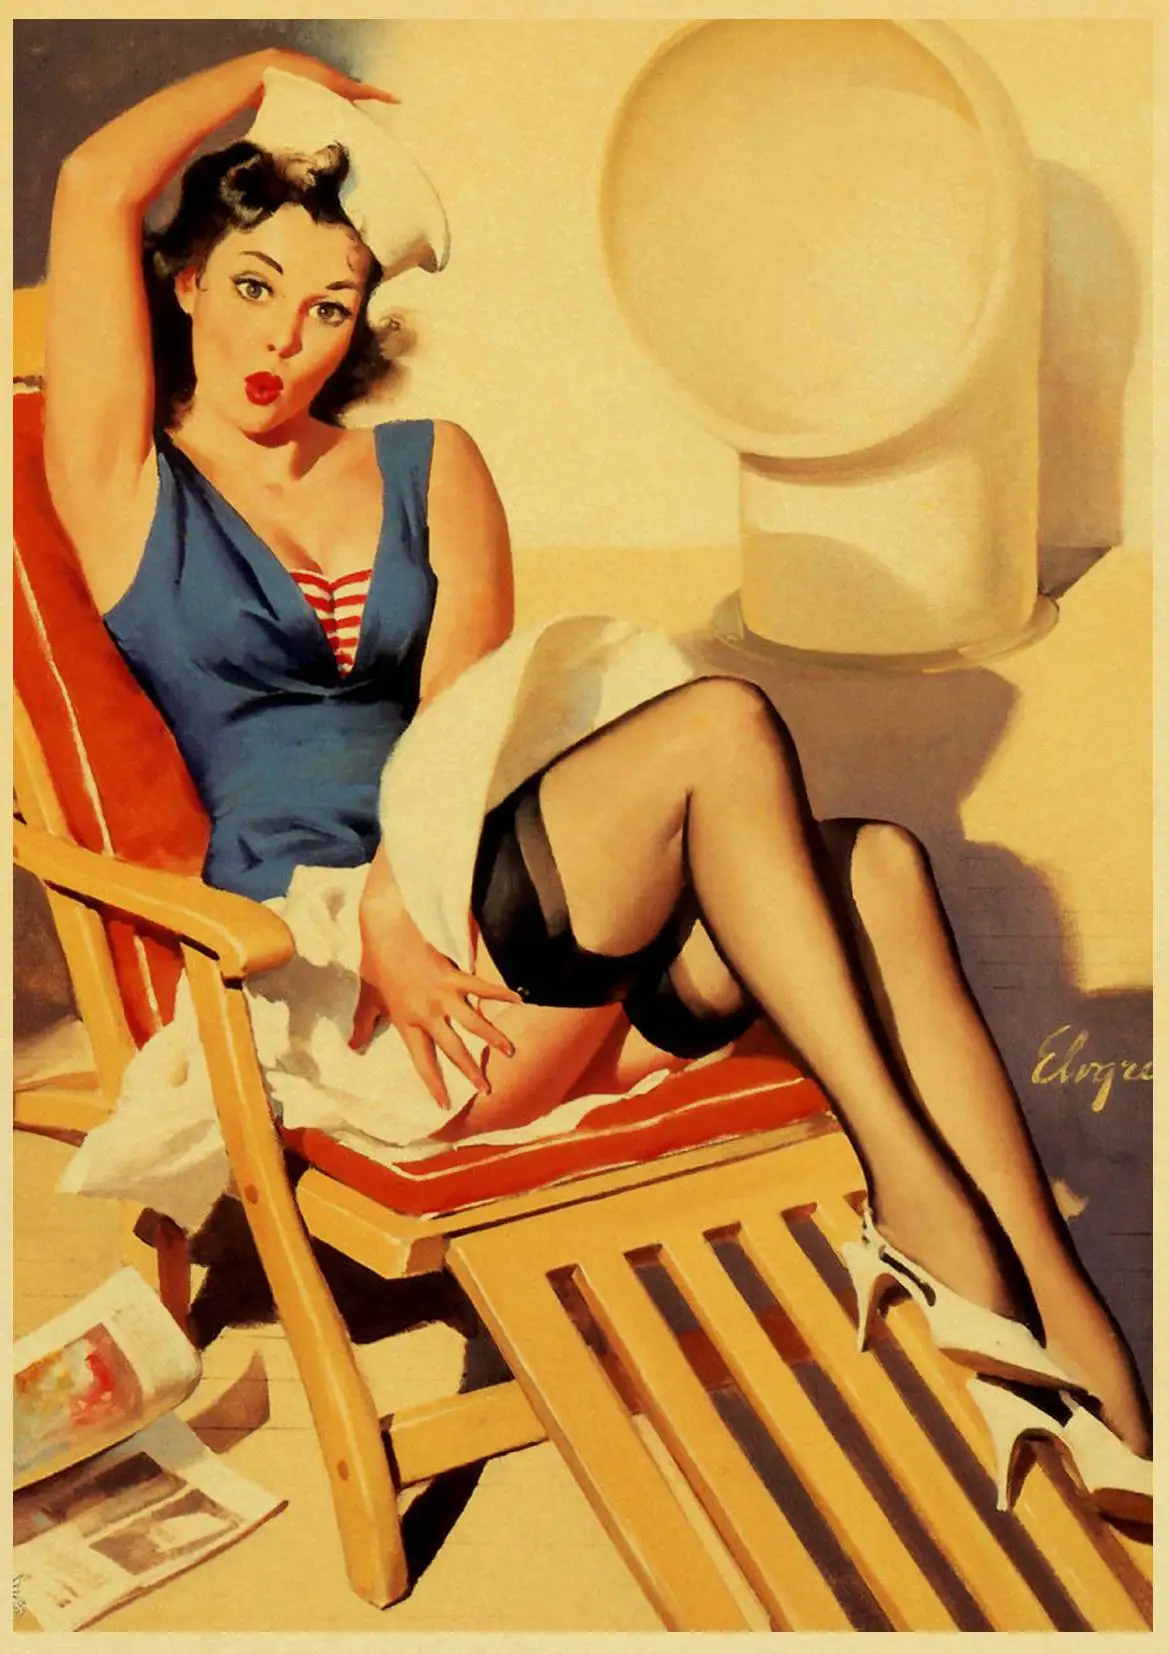 Булавка для девочек Классическая Вторая мировая война ретро крафт-бумага плакат винтажная булавка для девочек декоративная живопись Декор для дома комнаты